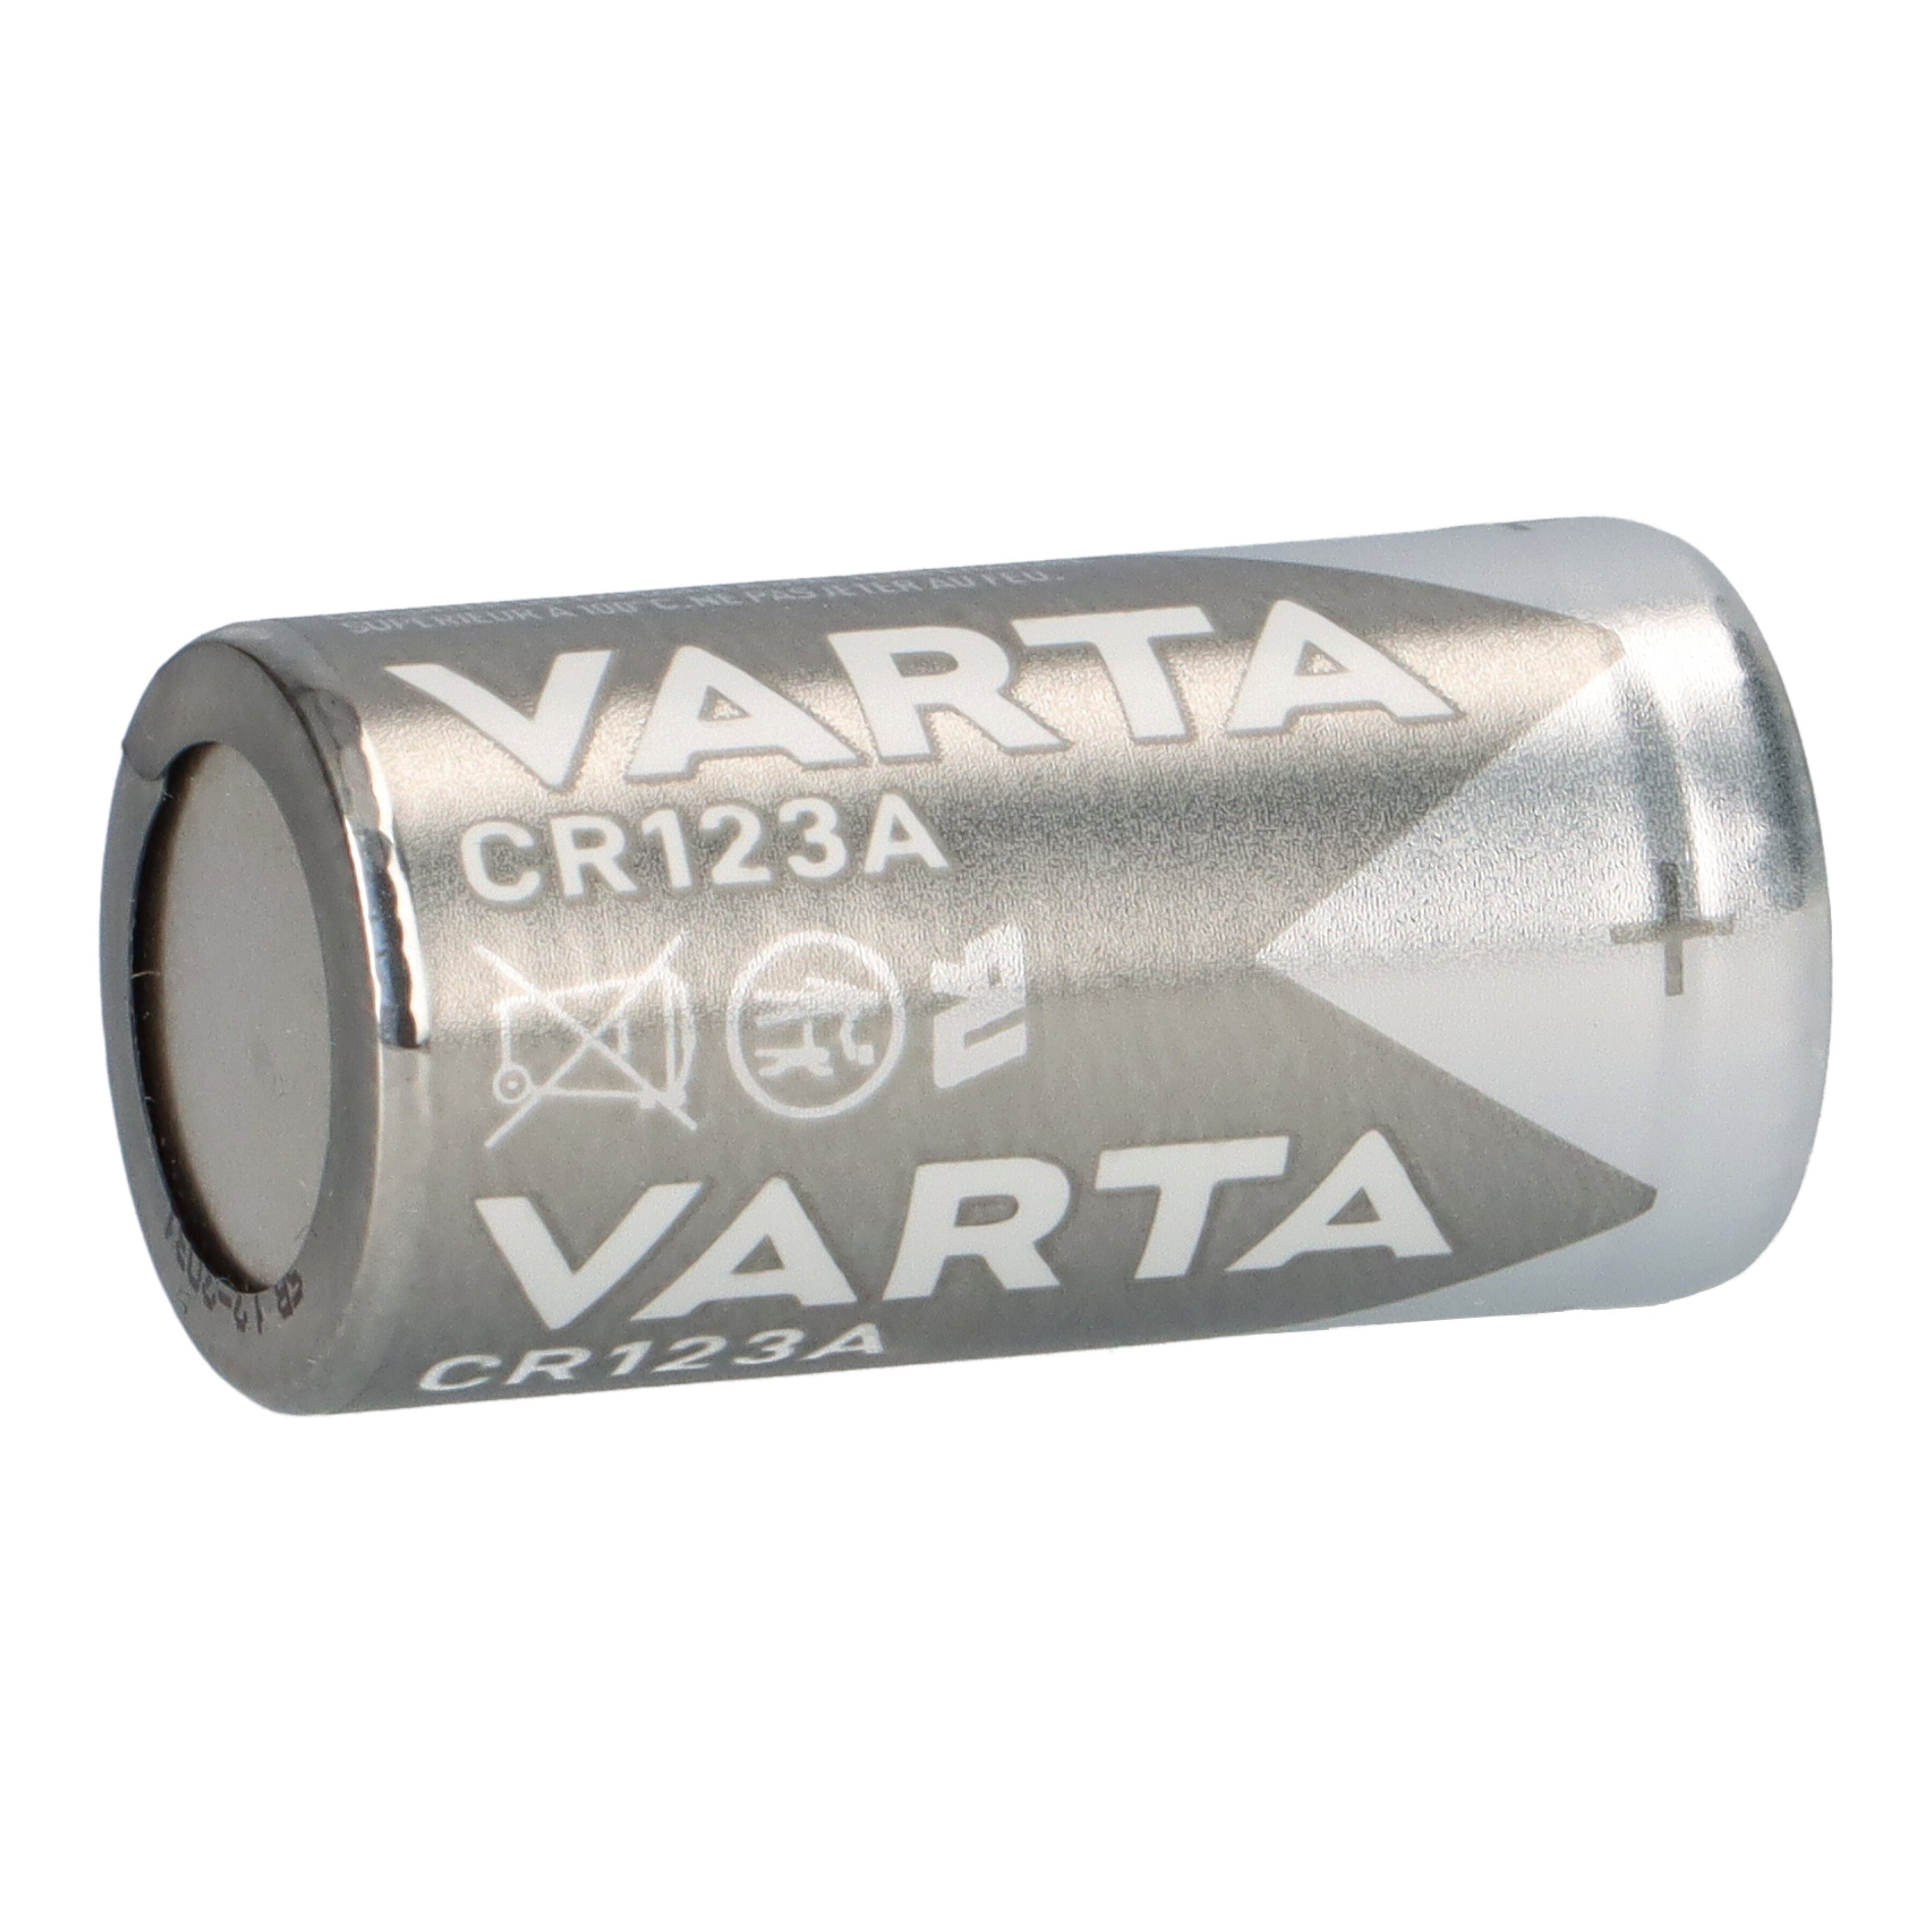 200x Photo Lithium Varta CR123A VARTA 3V Batterie Blister Batterie